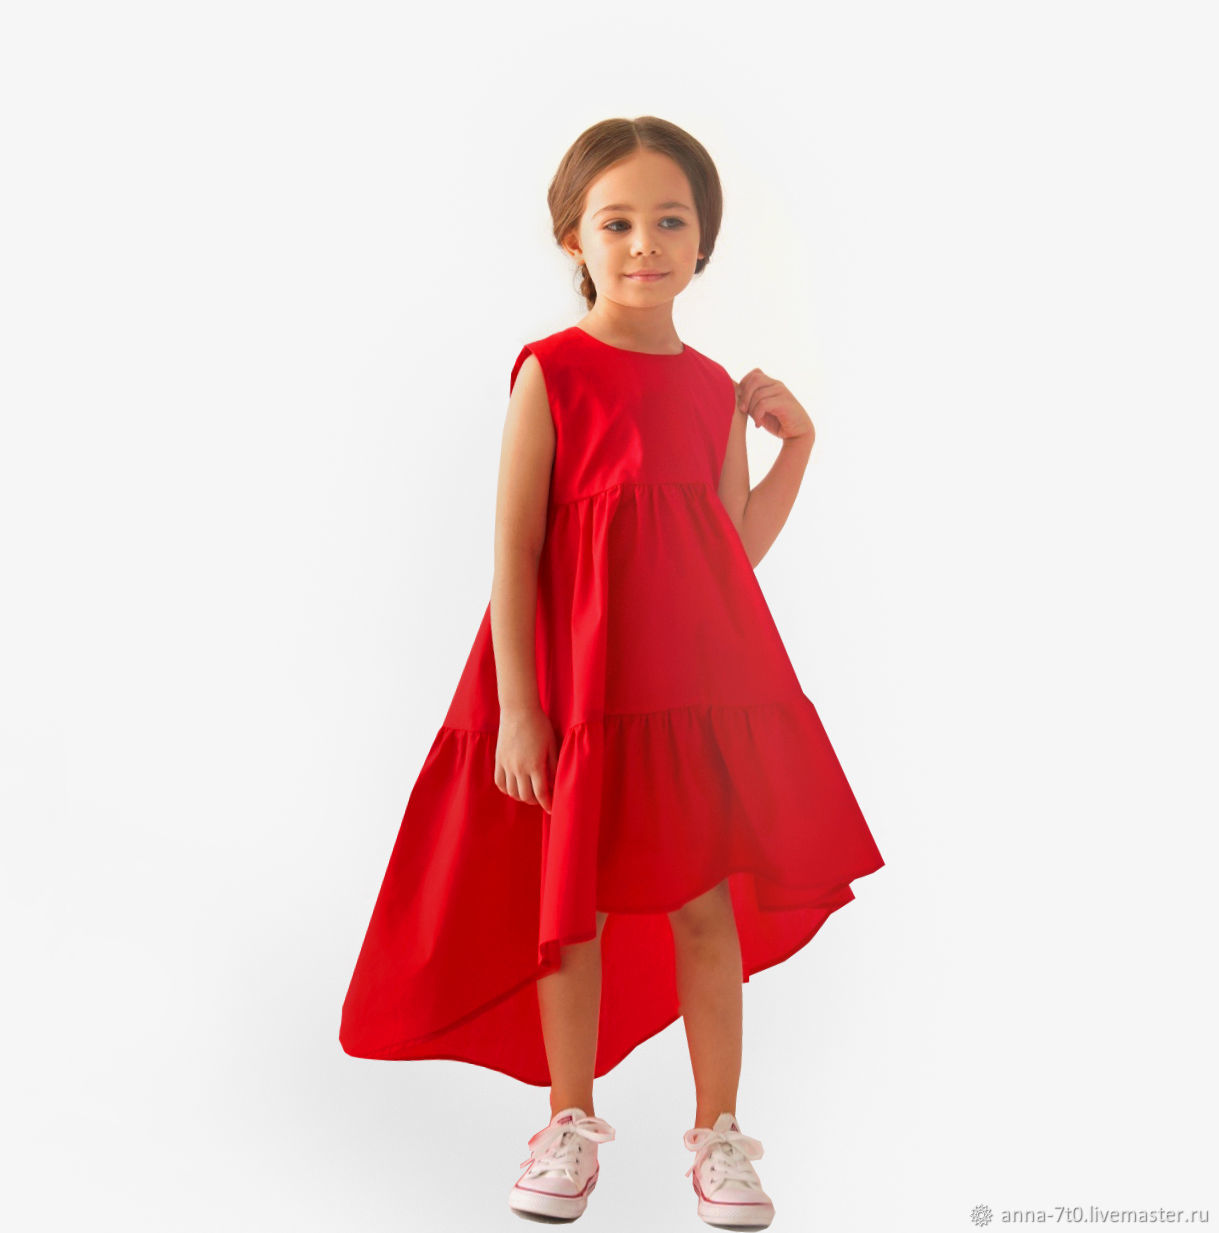 Как выбрать платье для девочки - Популярные повседневные фасоны